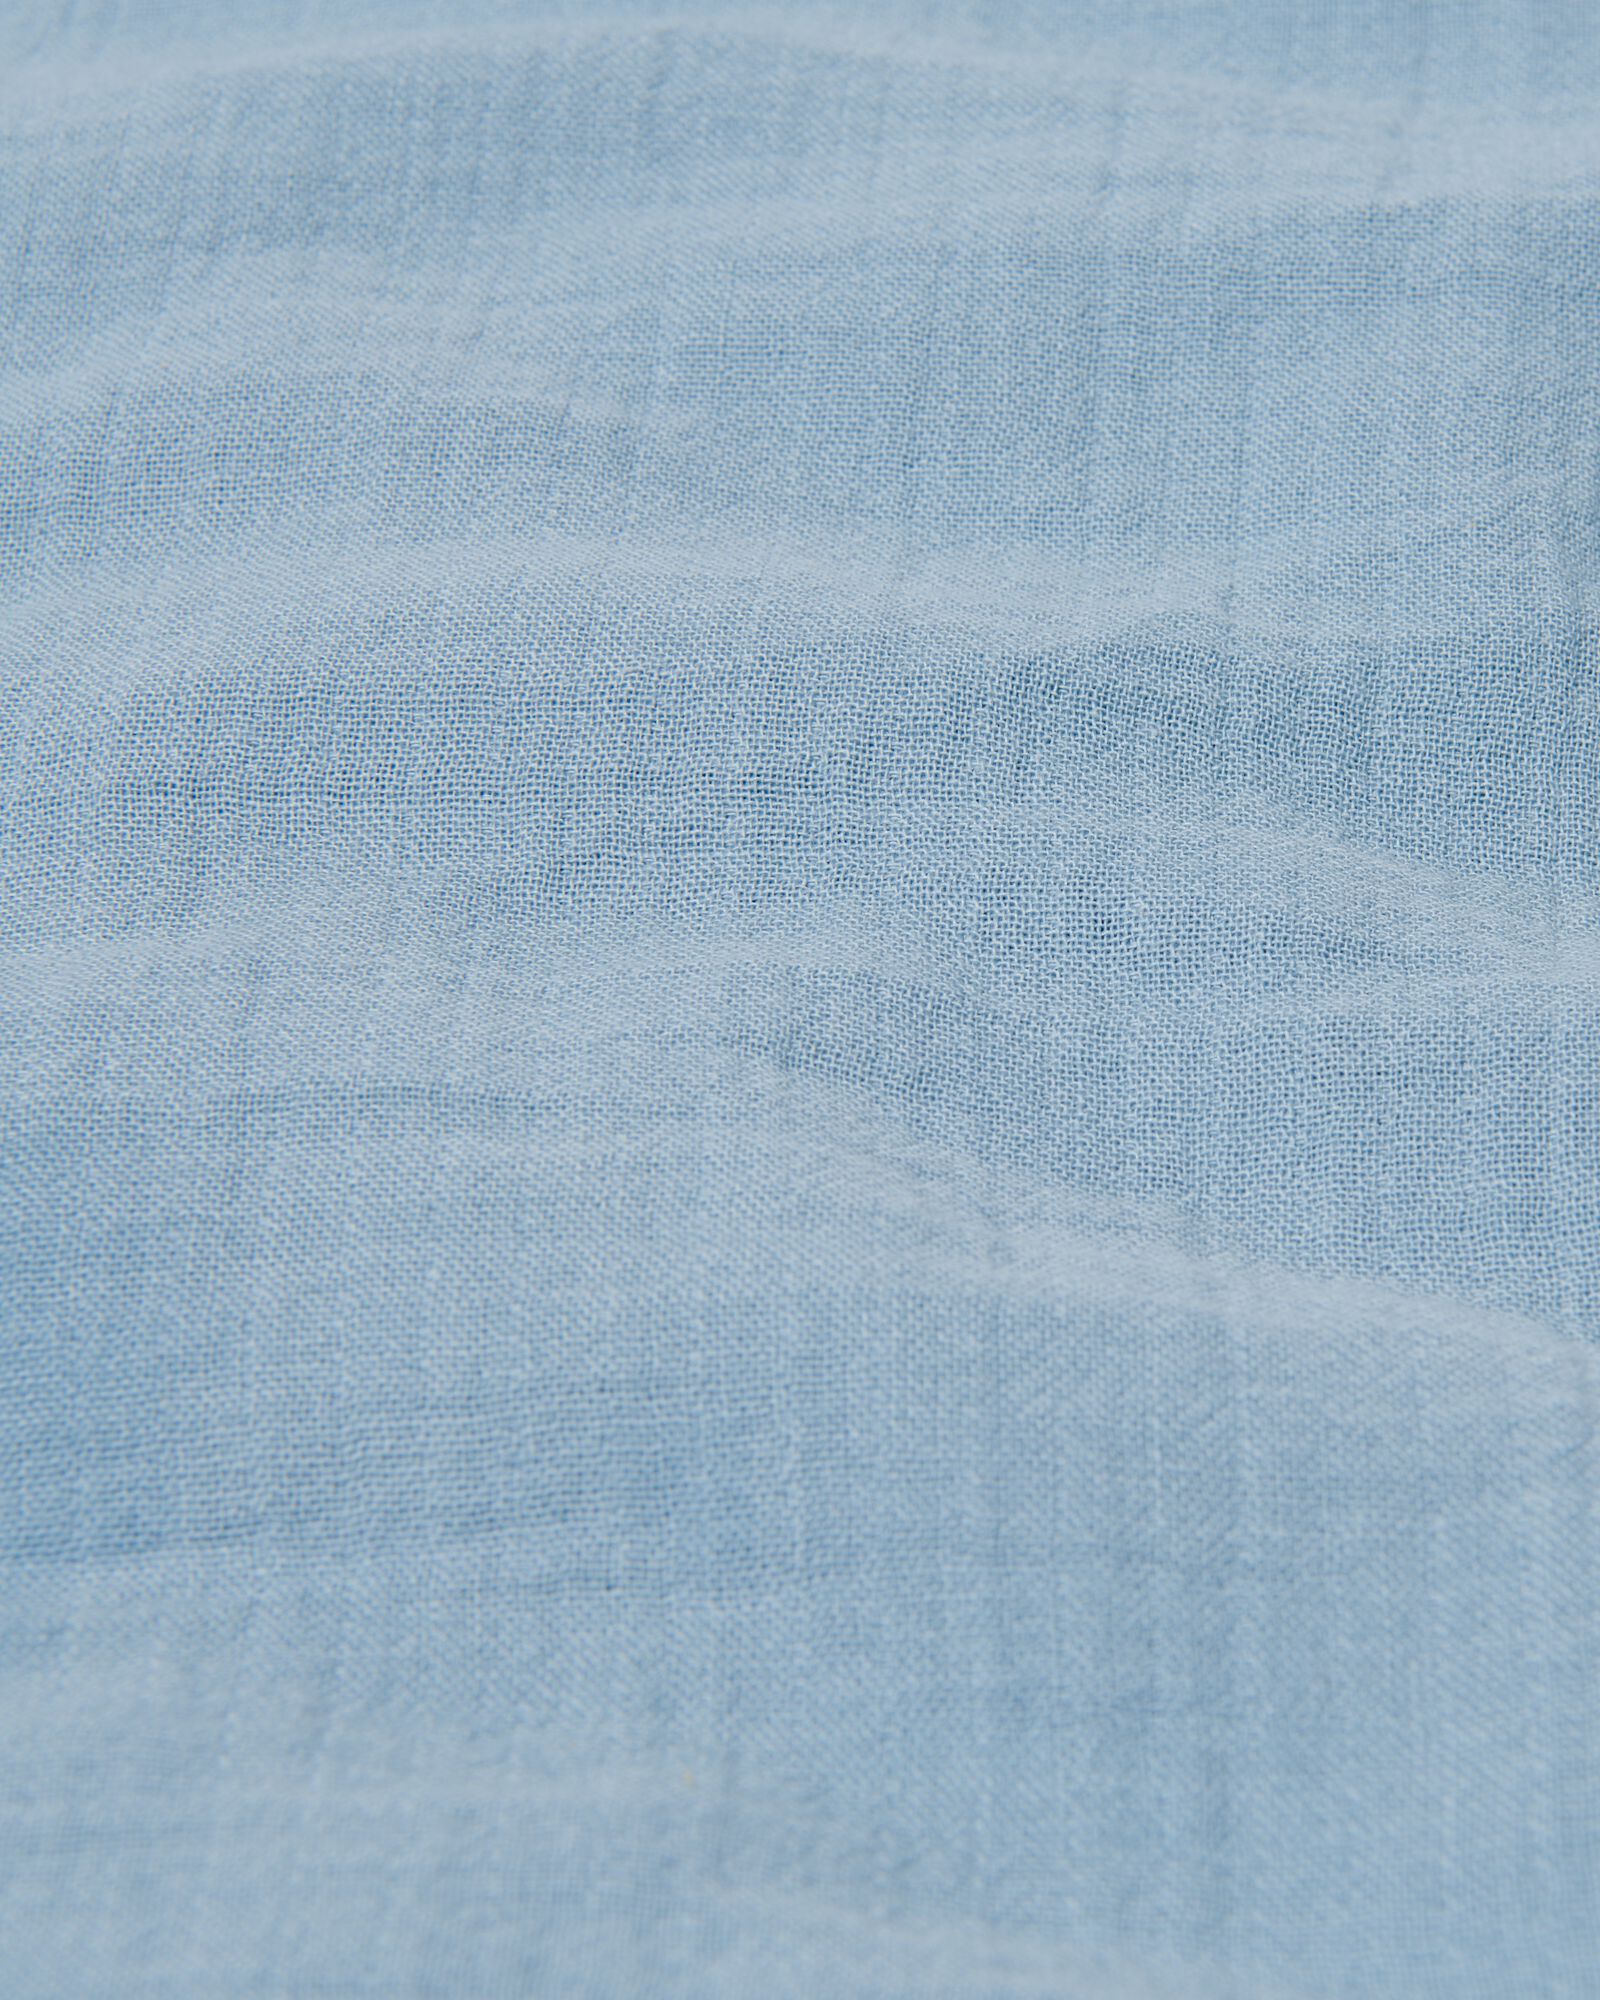 Bettwäsche, Baumwoll-Musselin, 240 x 200/220 cm, blau - 5730163 - HEMA